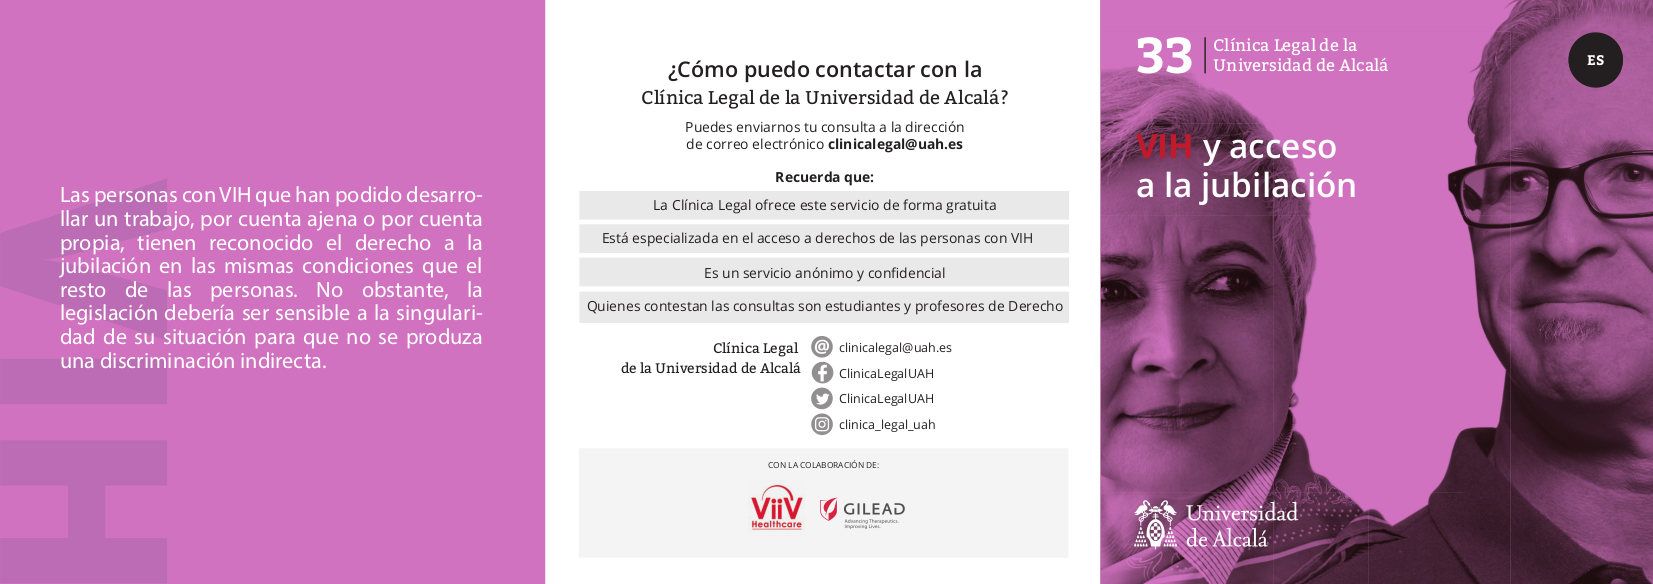 La asistencia sanitaria en España por nacionales UE con VIH